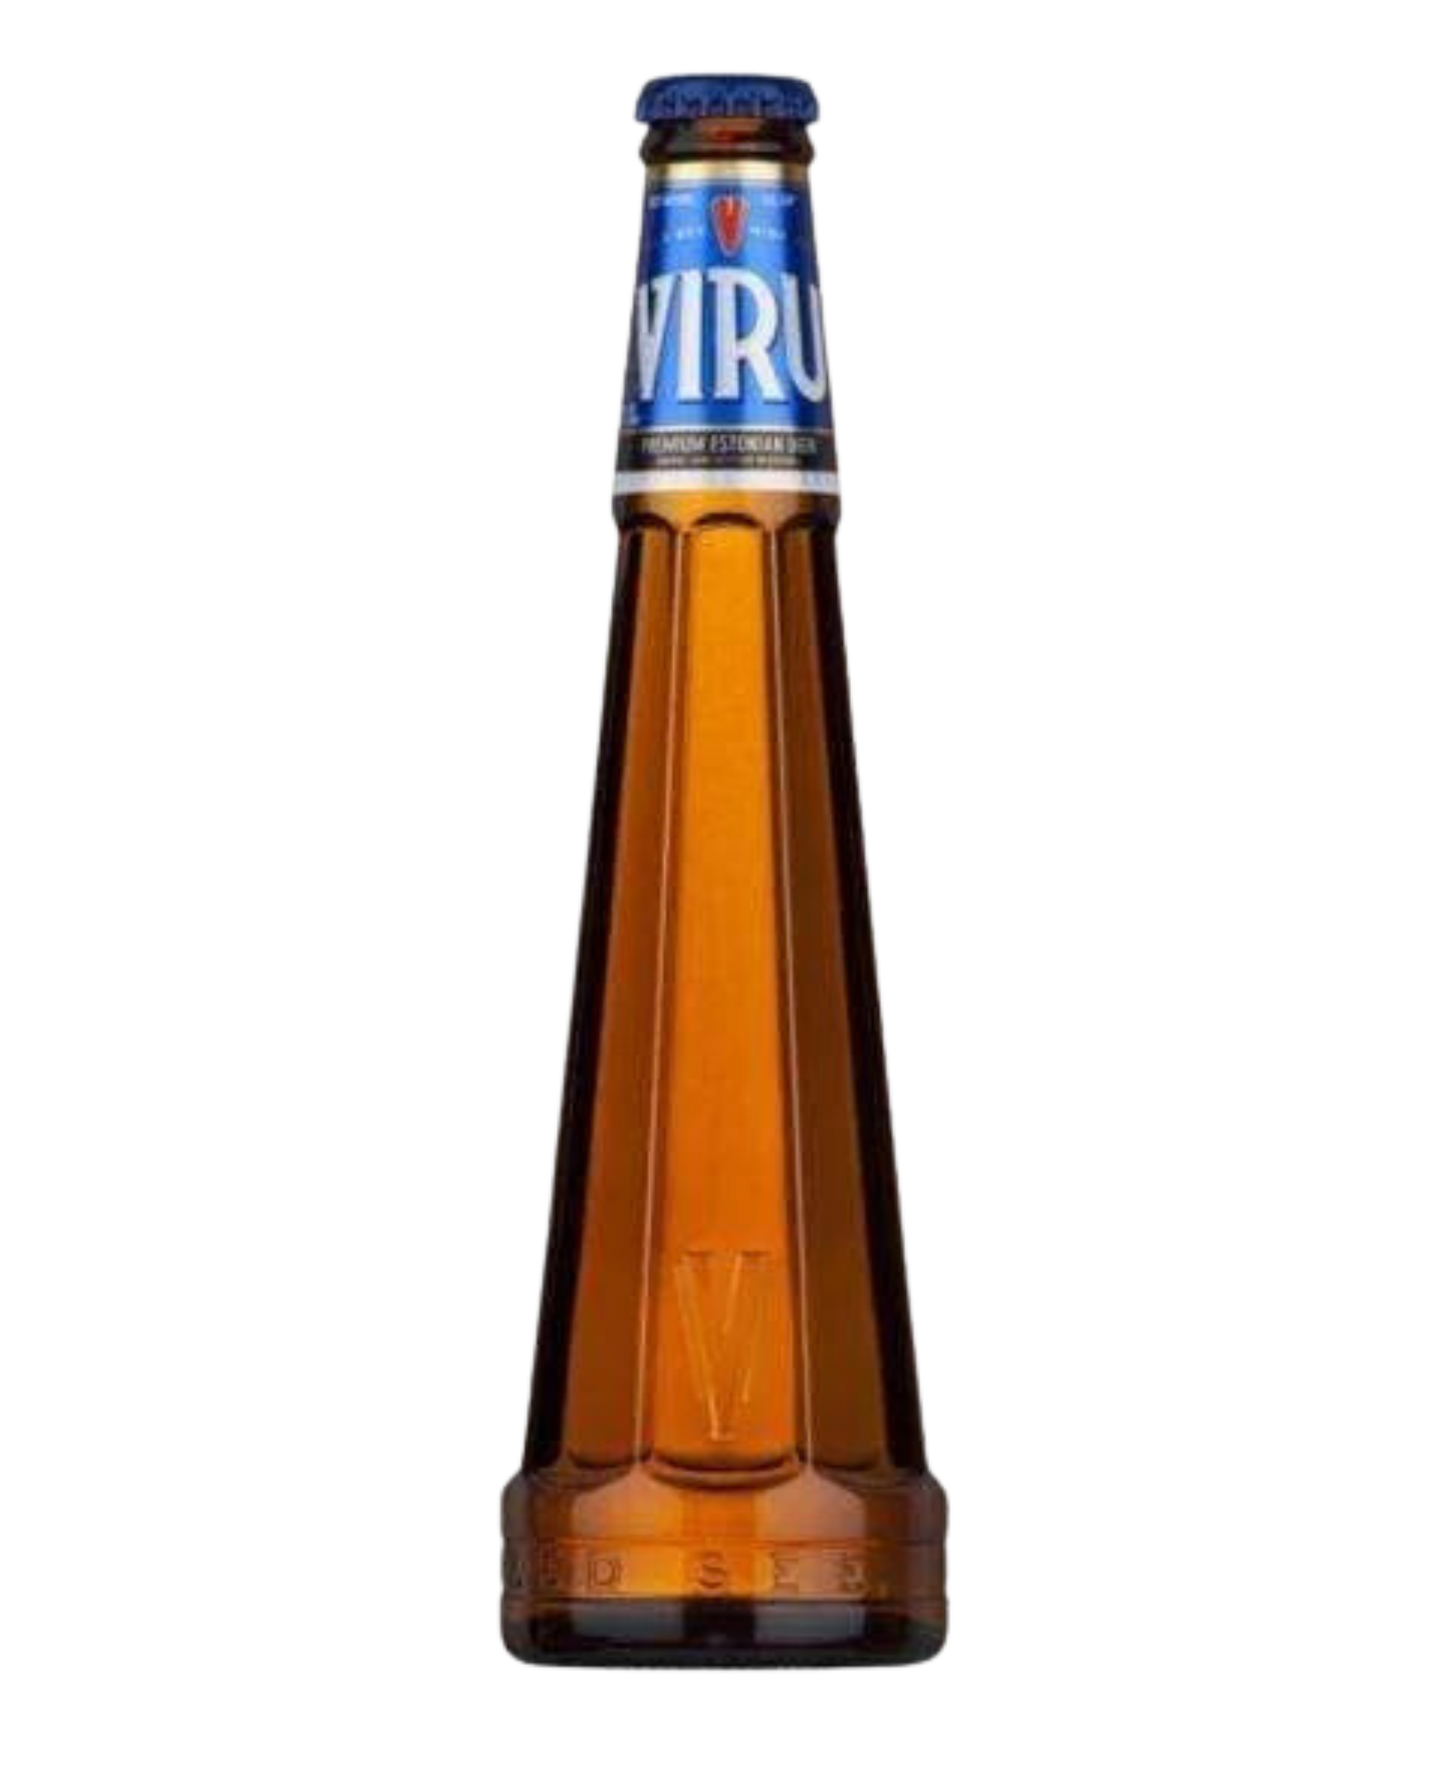 Viru Beer